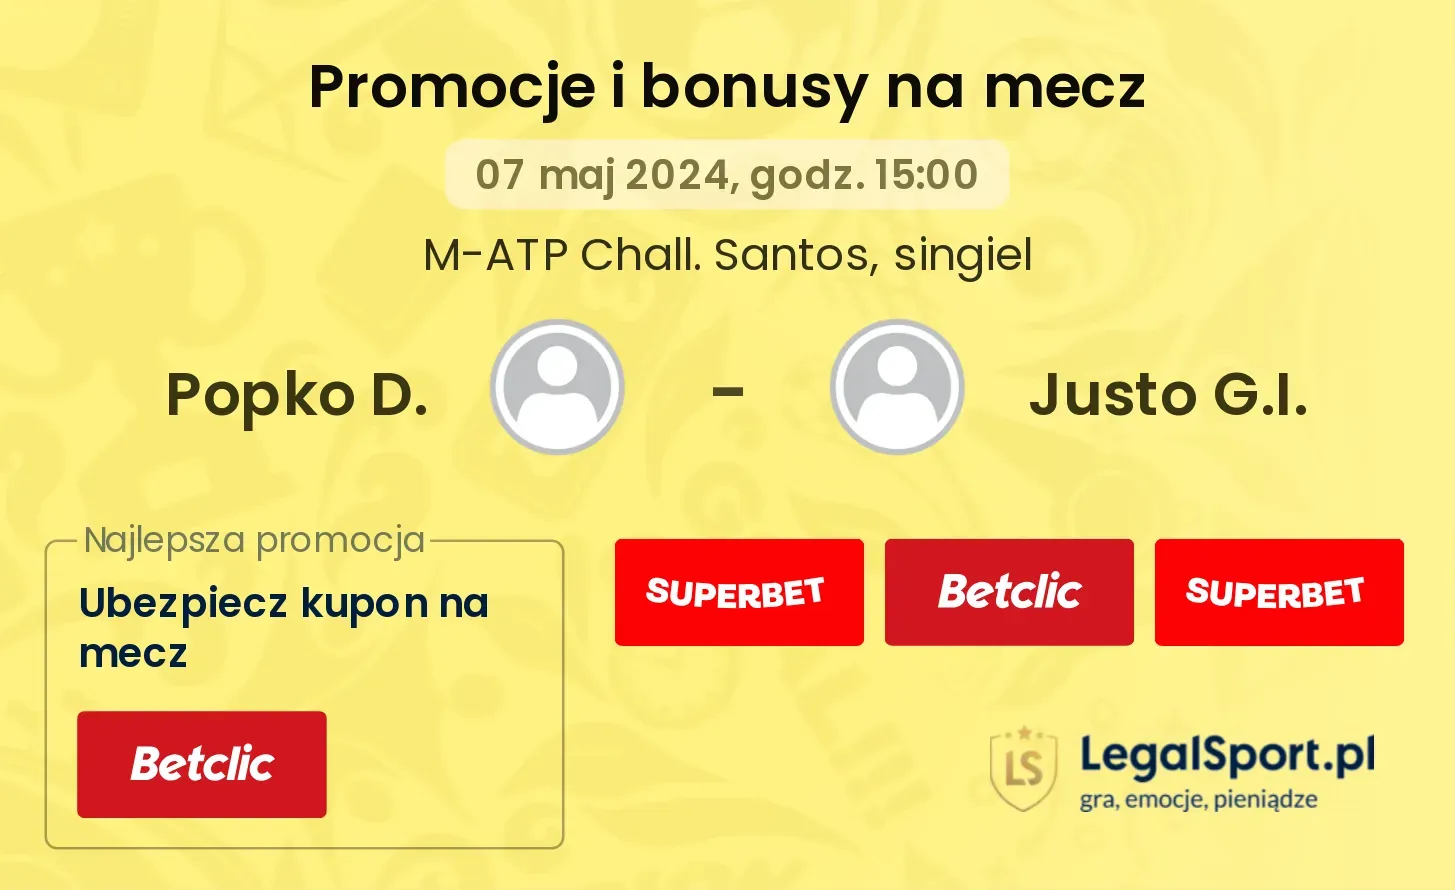 Popko D. - Justo G.I. promocje bonusy na mecz